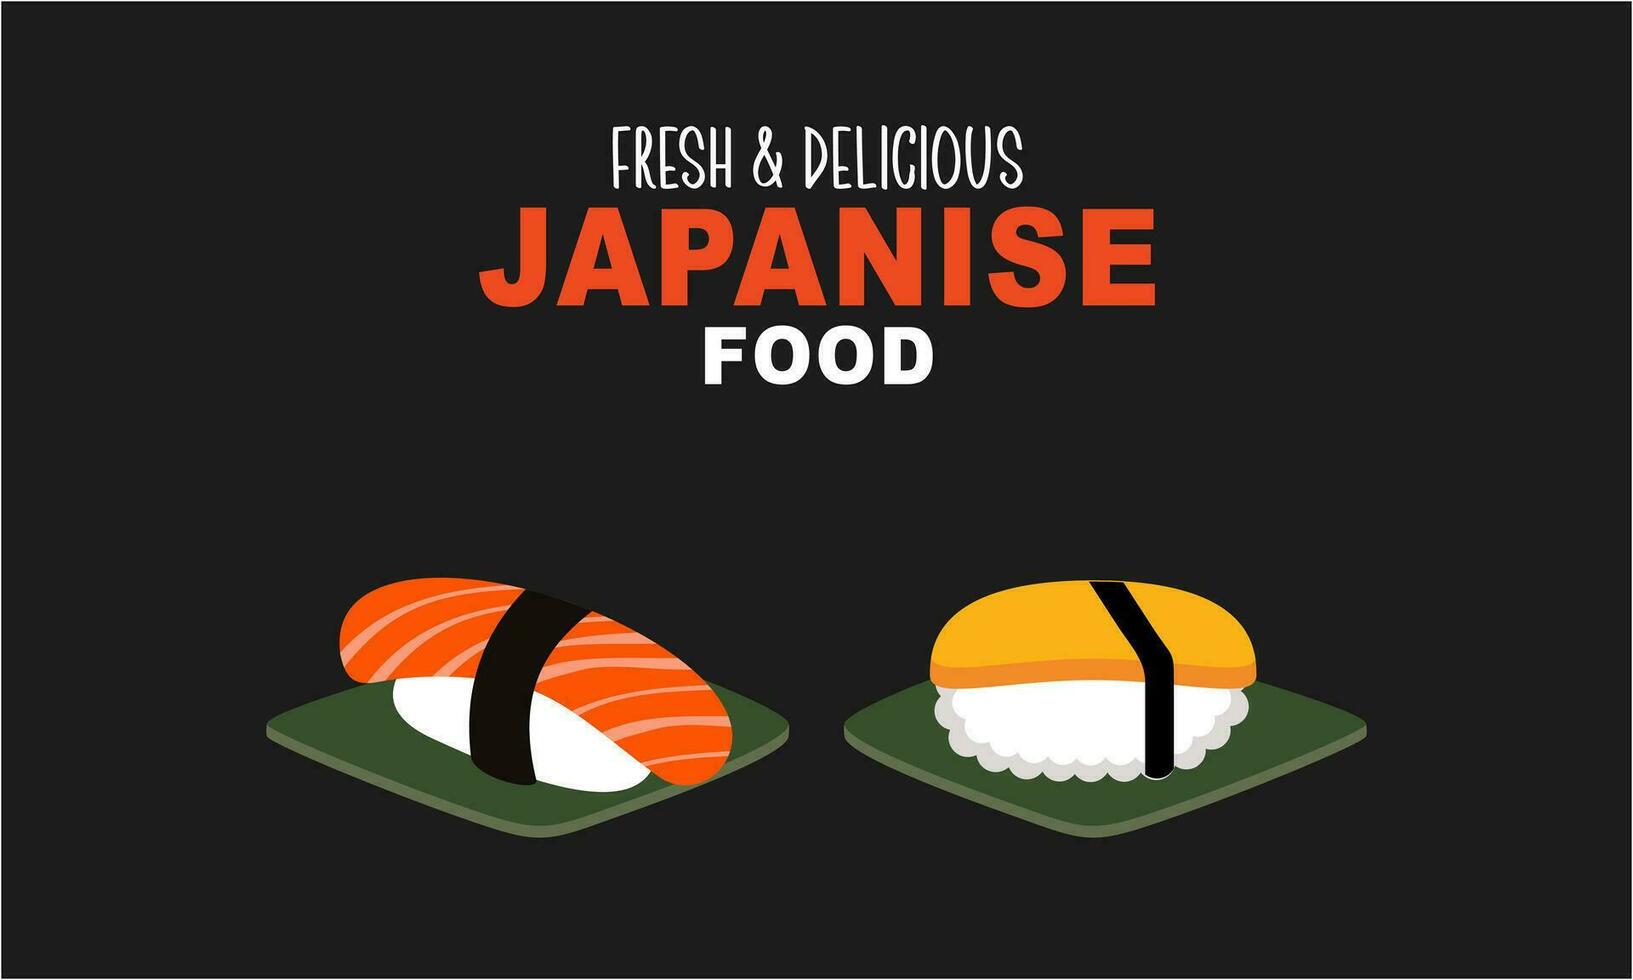 Clásico Sushi póster diseño con vector Sushi personaje